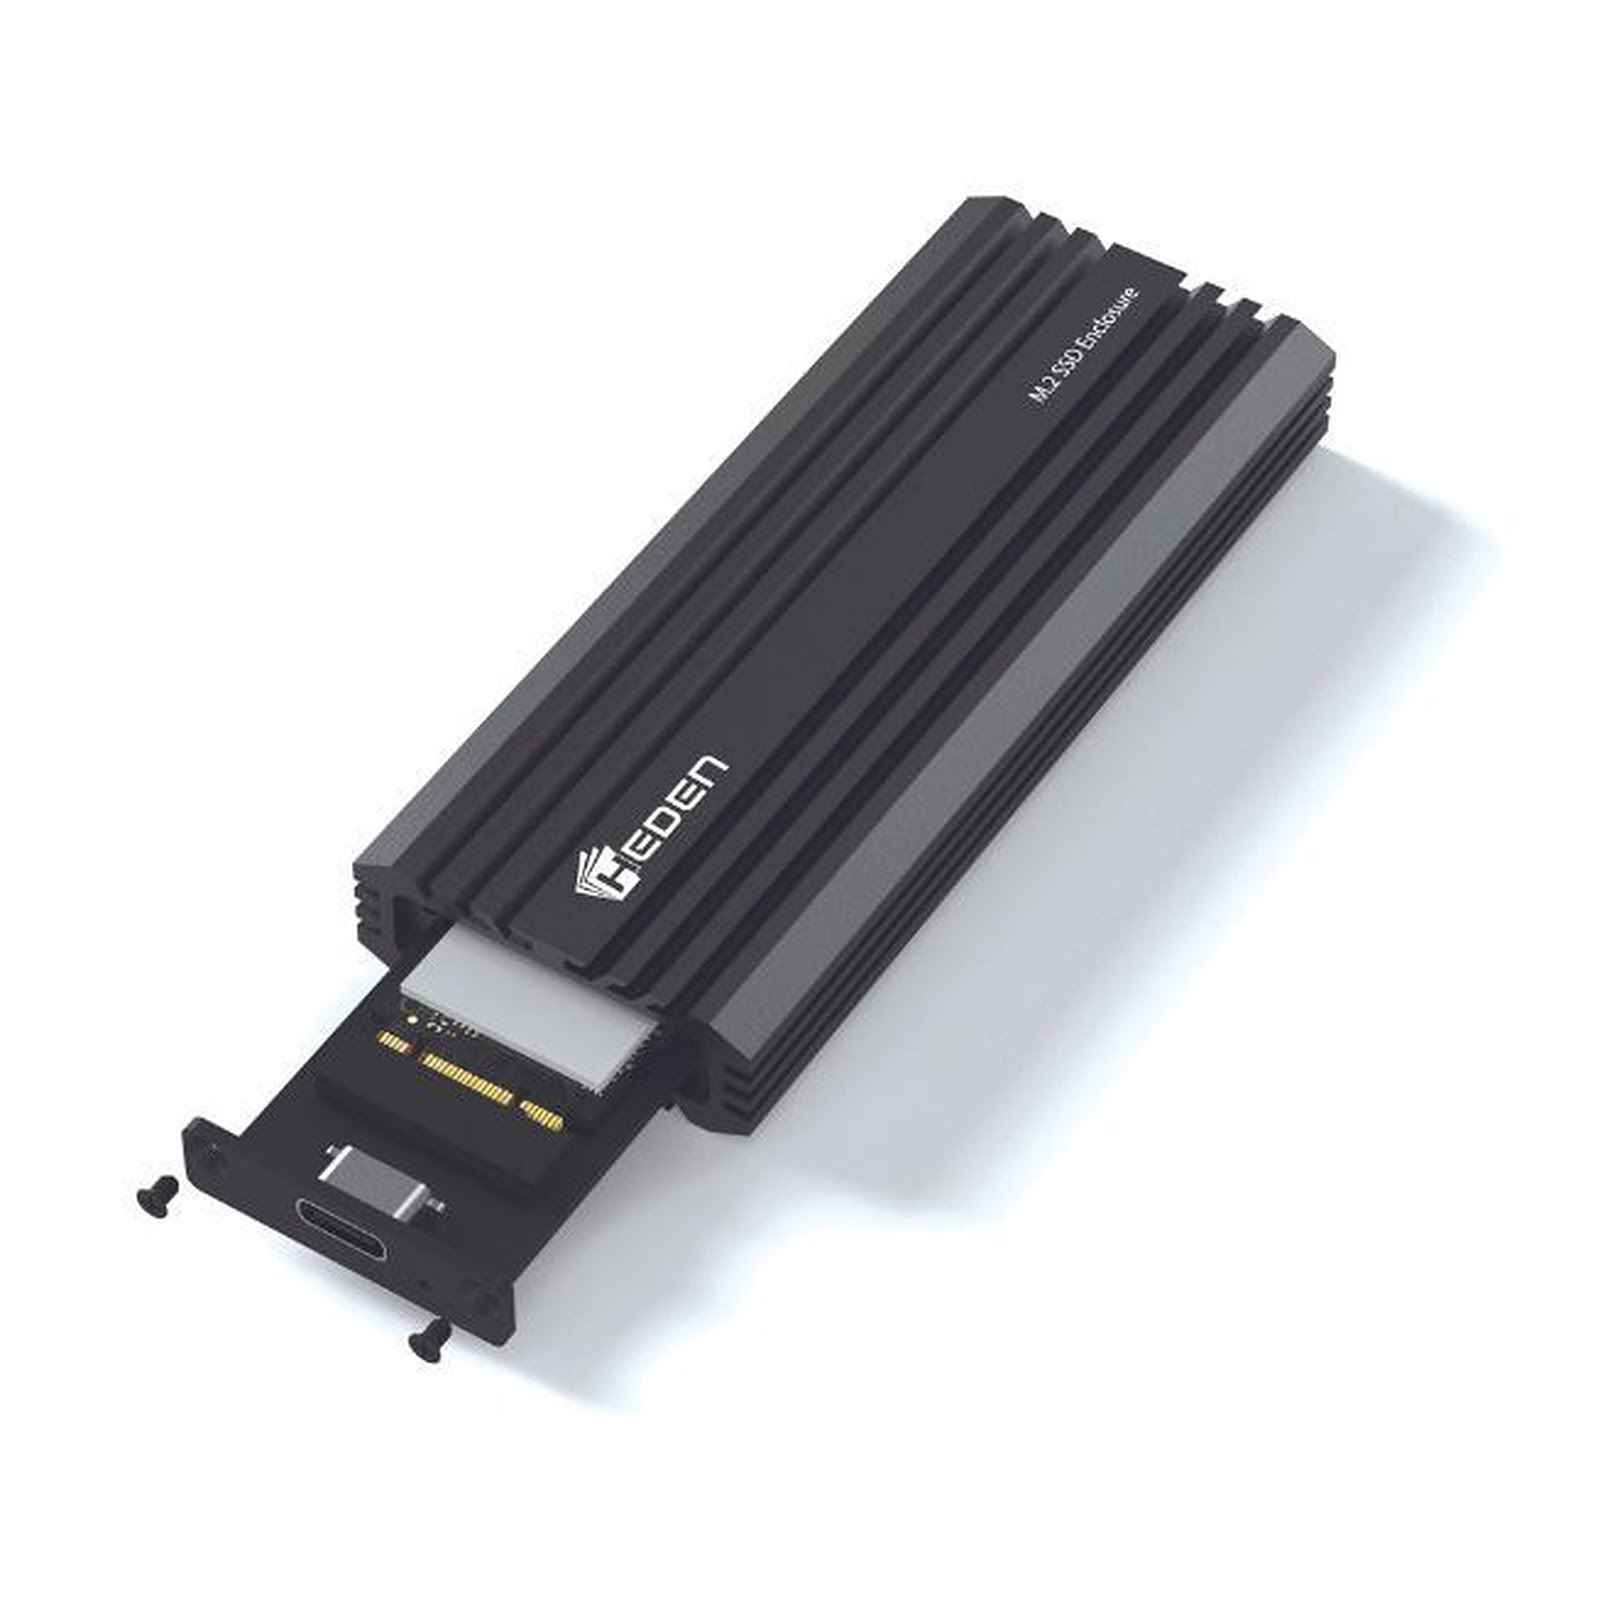 Cas de SSD noir - Boîtier Pour Disque Dur Sata Ssd 2.5 Pouces, Usb